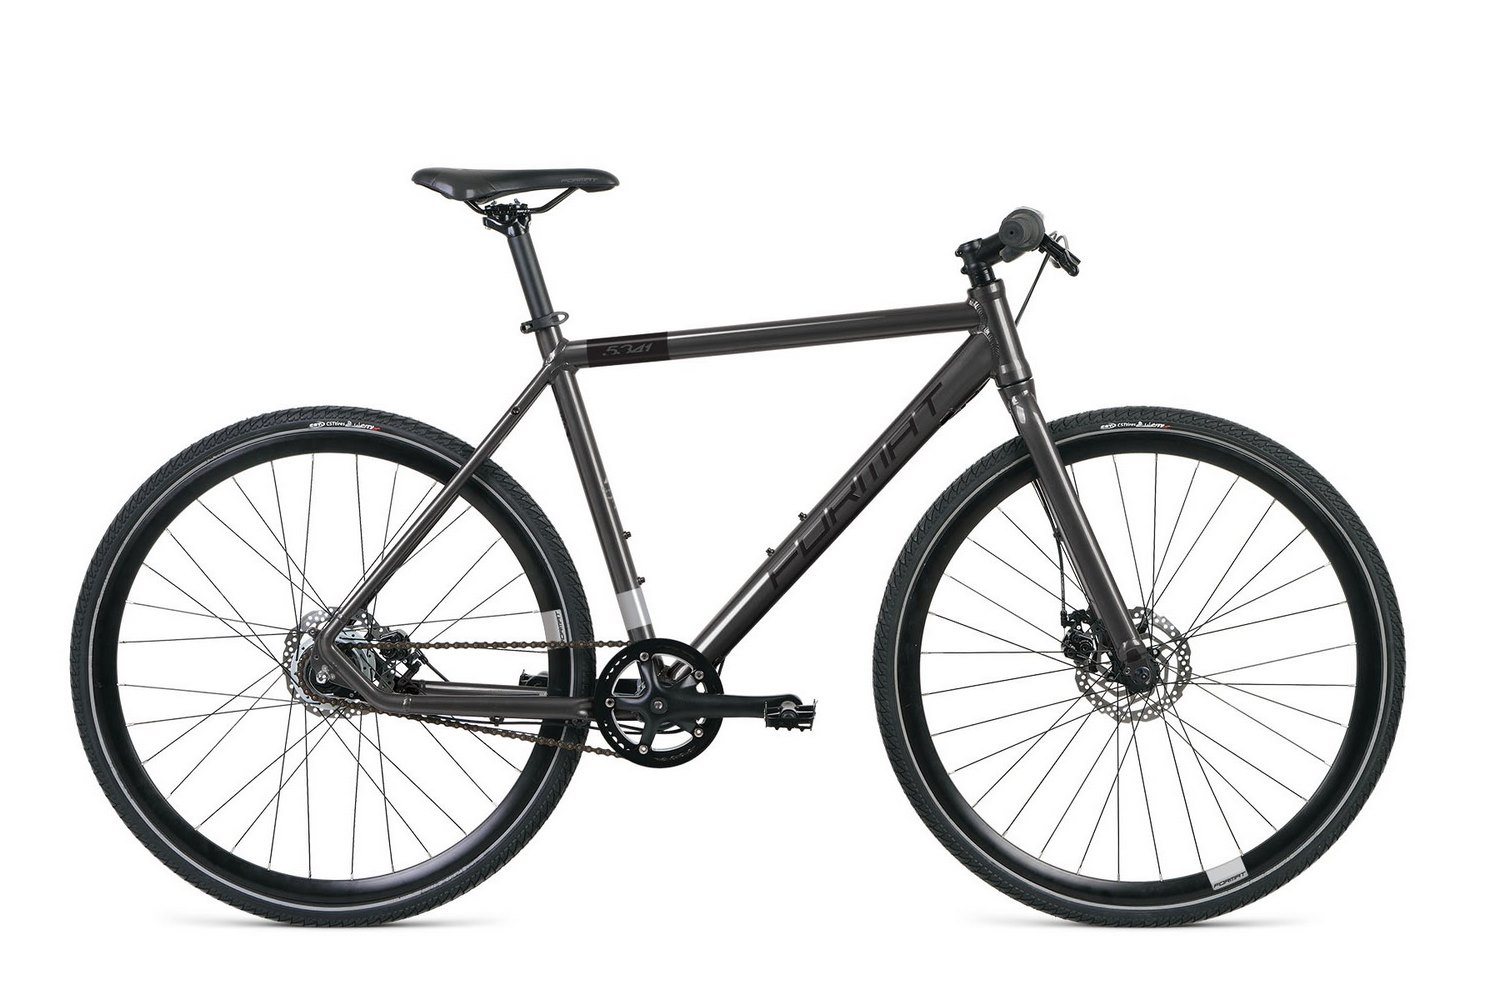  Отзывы о Городском велосипеде Format 5341 700C 2021